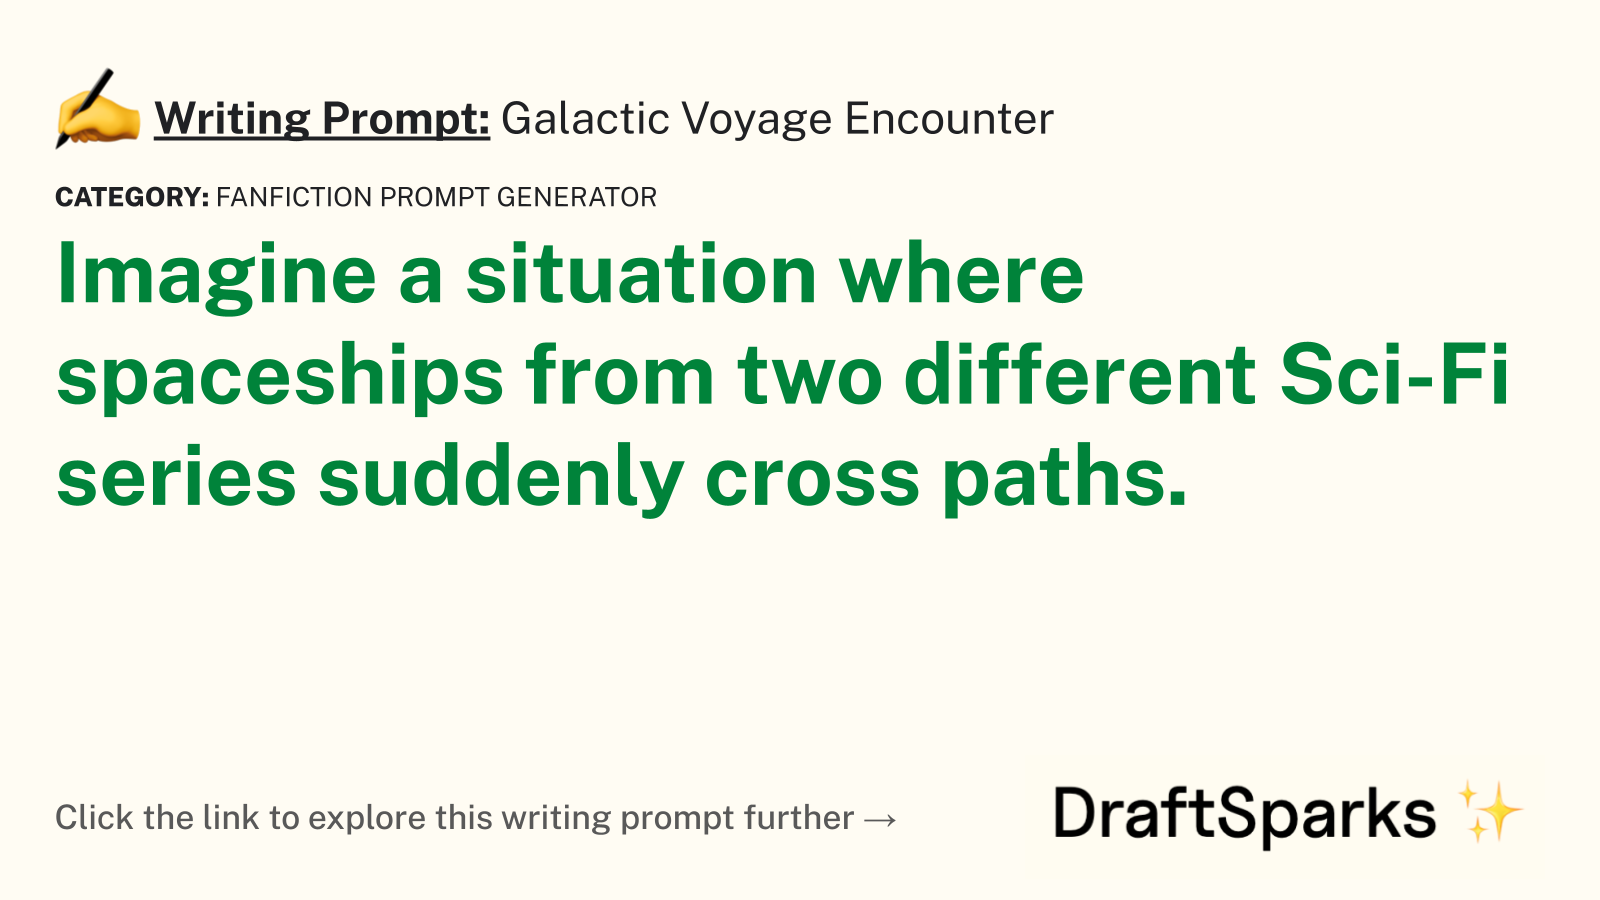 Galactic Voyage Encounter